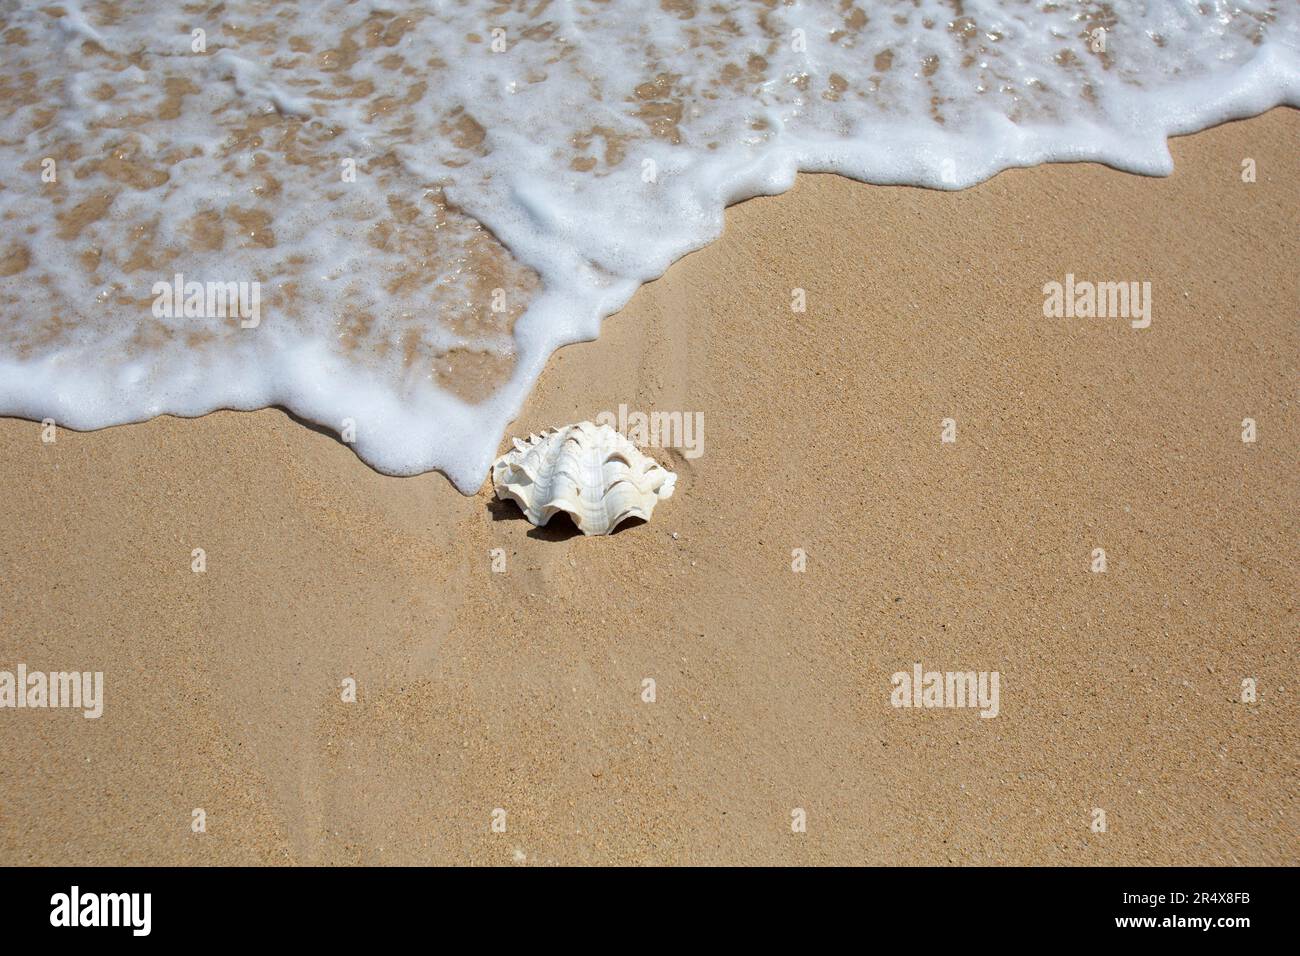 Coquille blanche, coquille Saint-Jacques sur la plage de sable à côté de la mousse, surf de l'océan ; Maui, Hawaï, États-Unis d'Amérique Banque D'Images